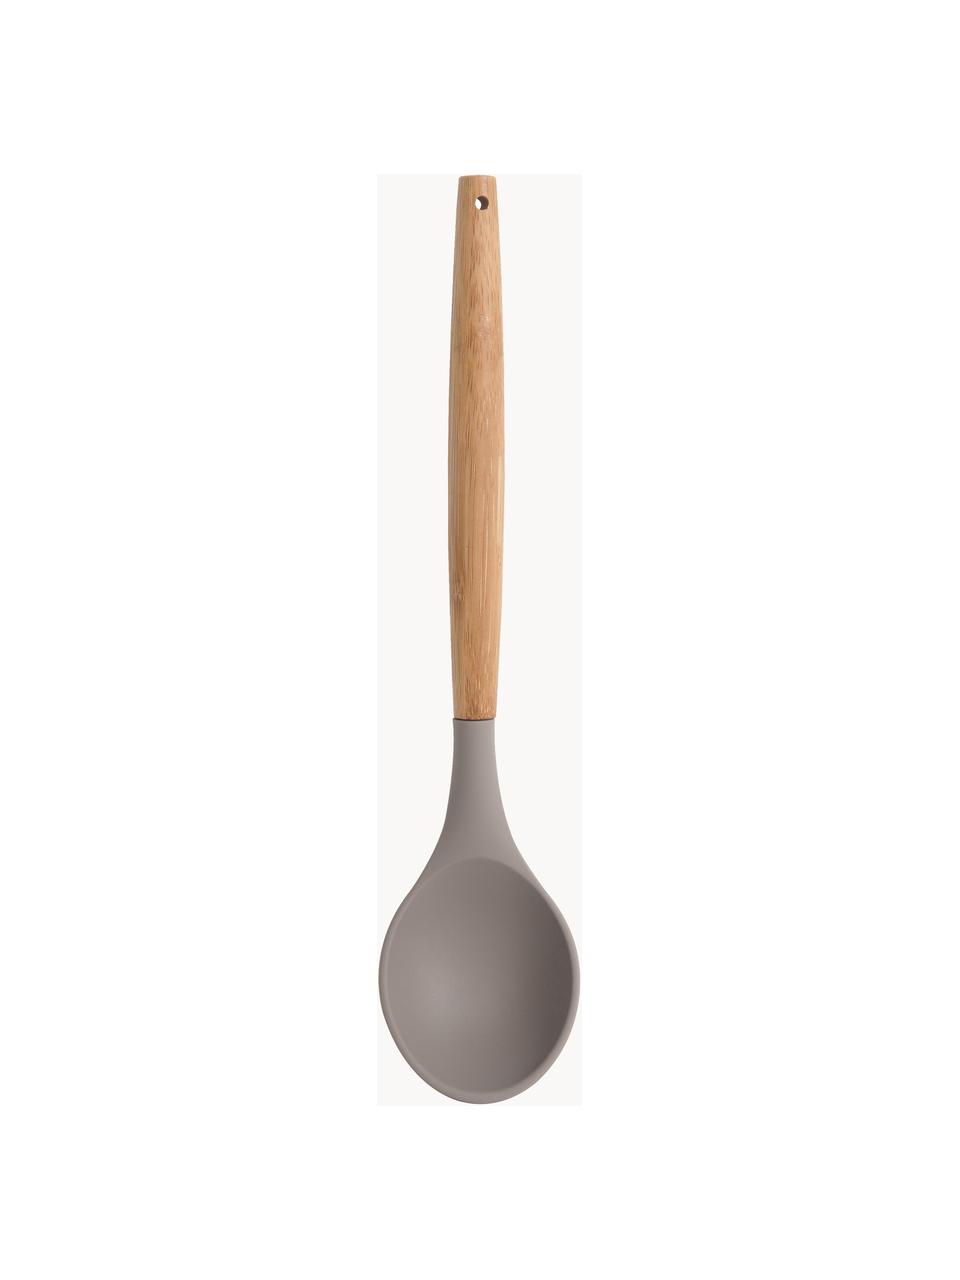 Cucchiaio da cucina Silico, Plastica, legno, Greige, legno, Lunghezza 32 cm